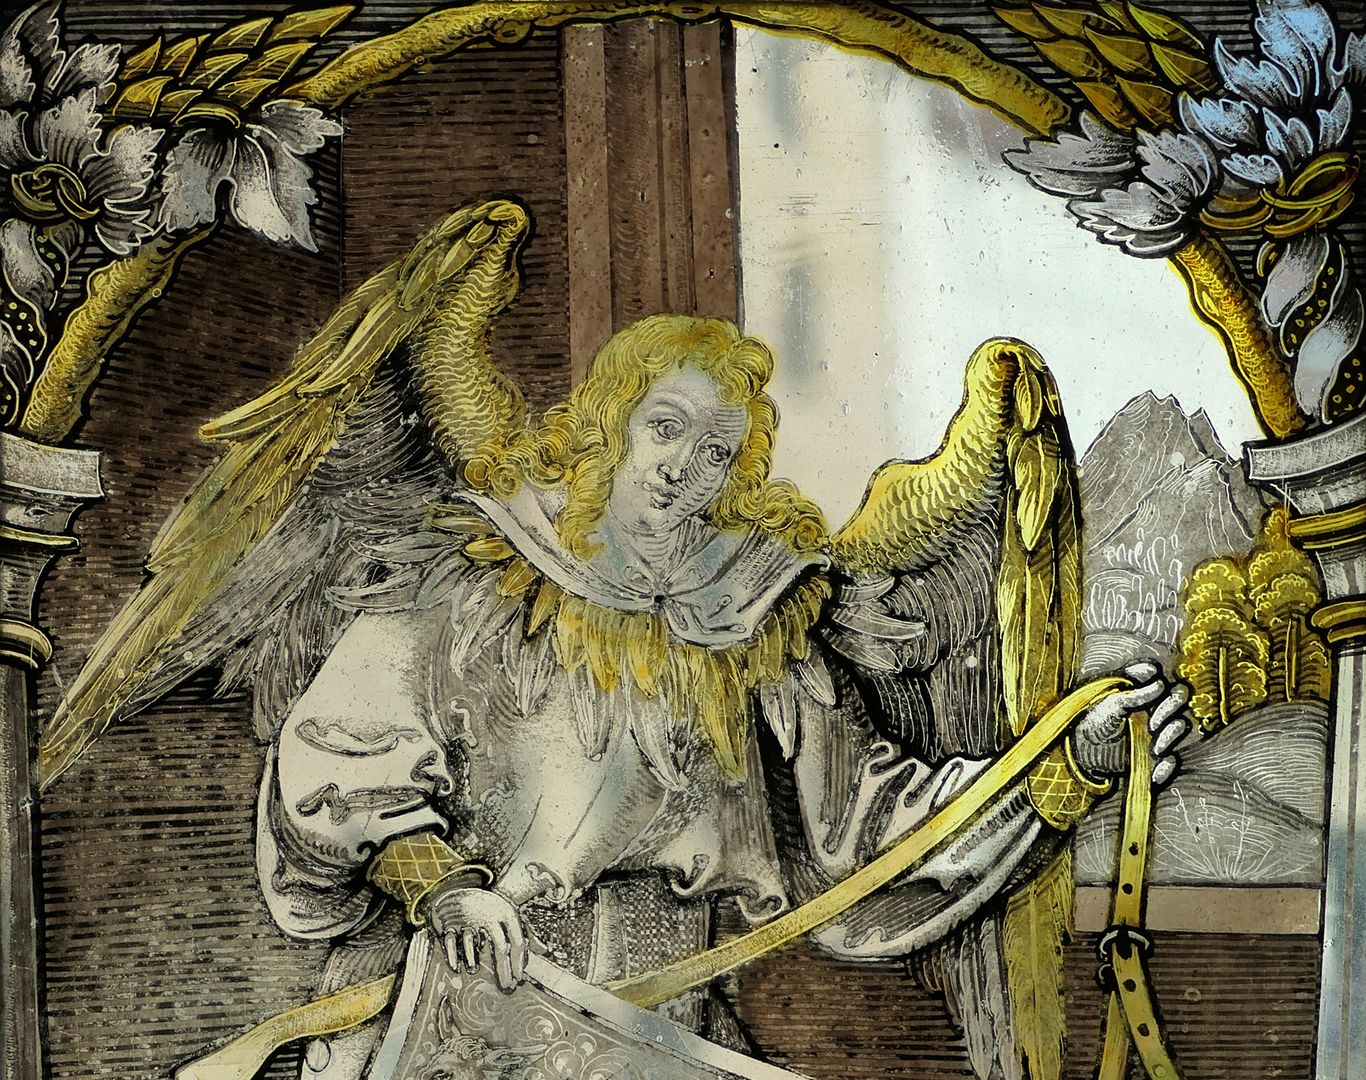 Fenster nII 1 des Sebalder Chörleins Engel mit Wappenschild, Wappenallianz Eseler/Propstei St. Sebald, Detailansicht mit Engel